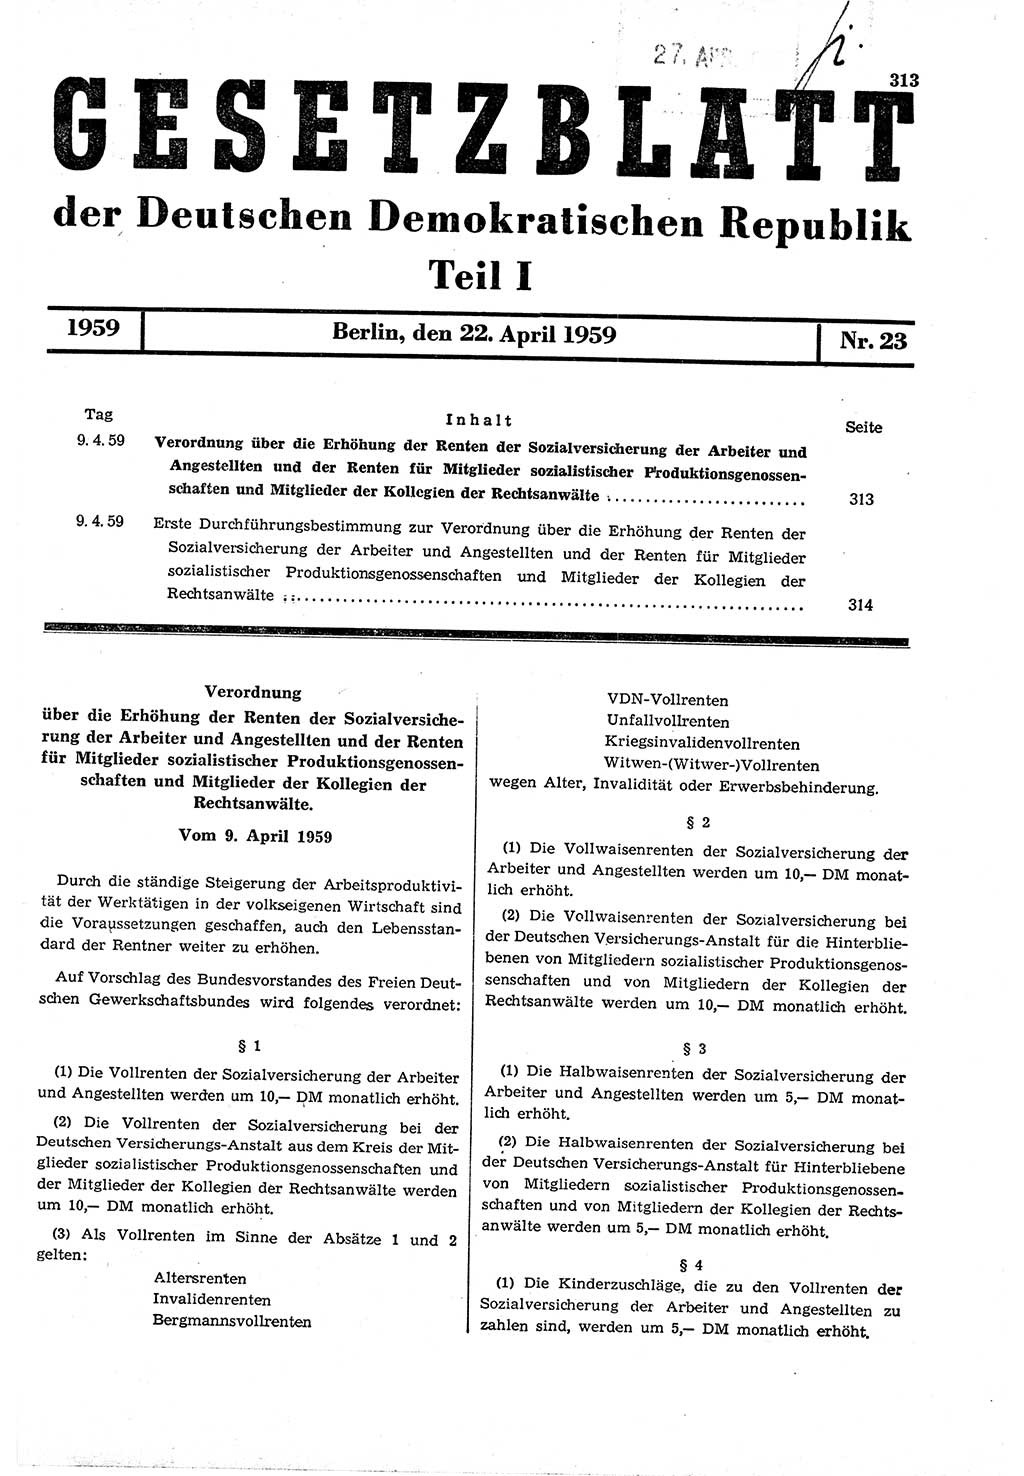 Gesetzblatt (GBl.) der Deutschen Demokratischen Republik (DDR) Teil Ⅰ 1959, Seite 313 (GBl. DDR Ⅰ 1959, S. 313)